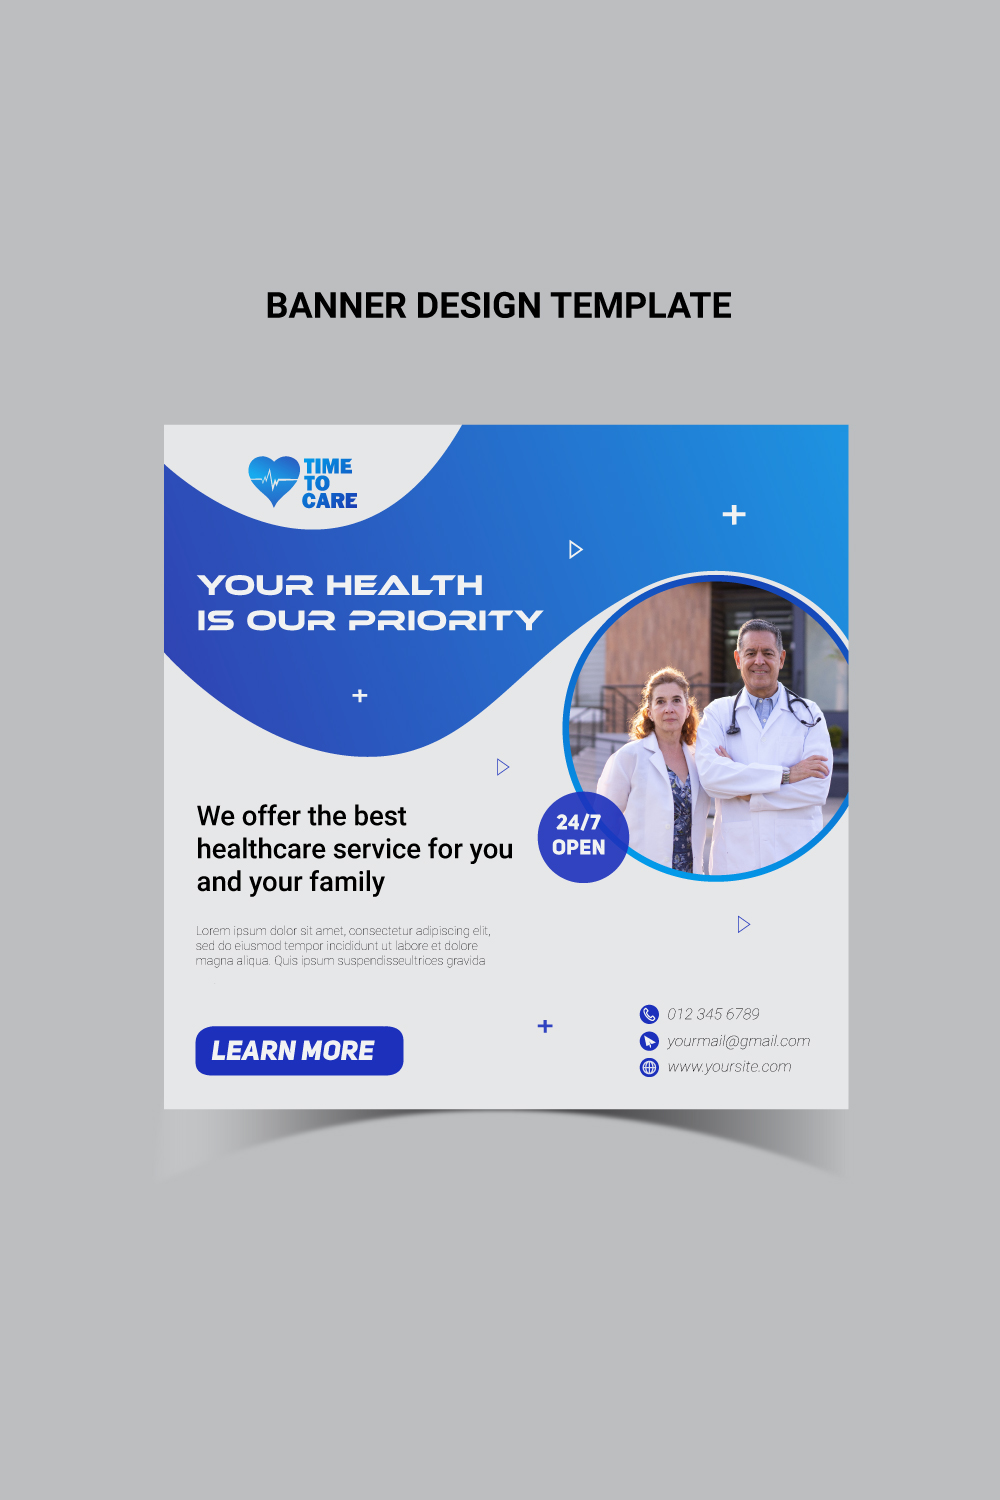 10 Social Media Banner Design SVG File pinterest preview image.